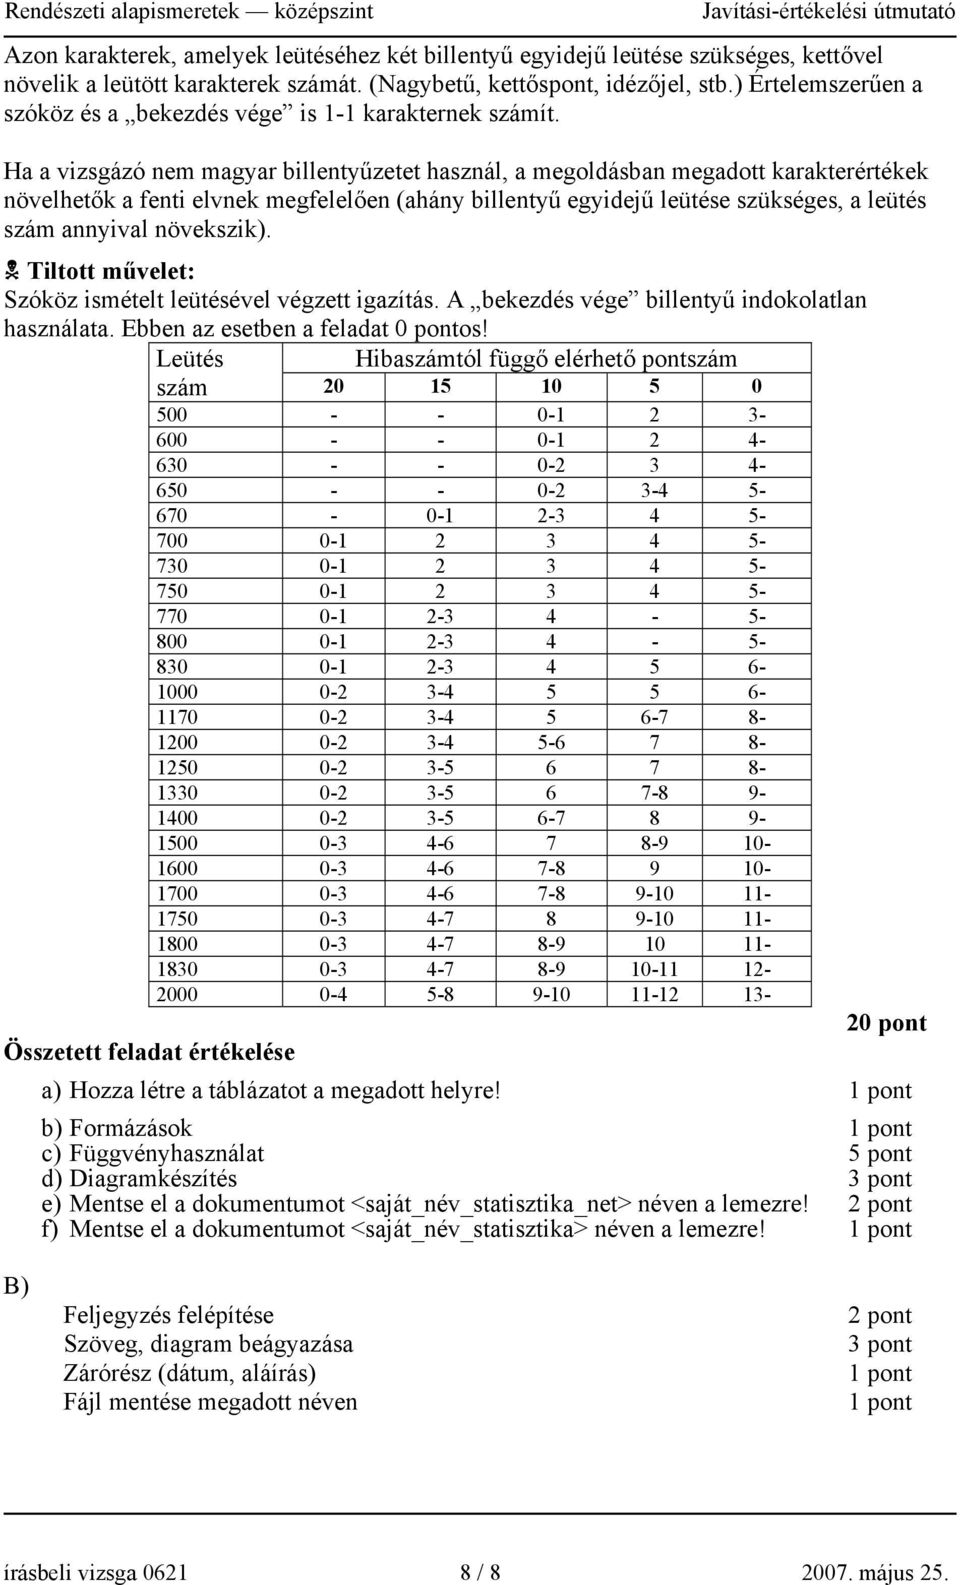 Ha a vizsgázó nem magyar billentyűzetet használ, a megoldásban megadott karakterértékek növelhetők a fenti elvnek megfelelően (ahány billentyű egyidejű leütése szükséges, a leütés szám annyival